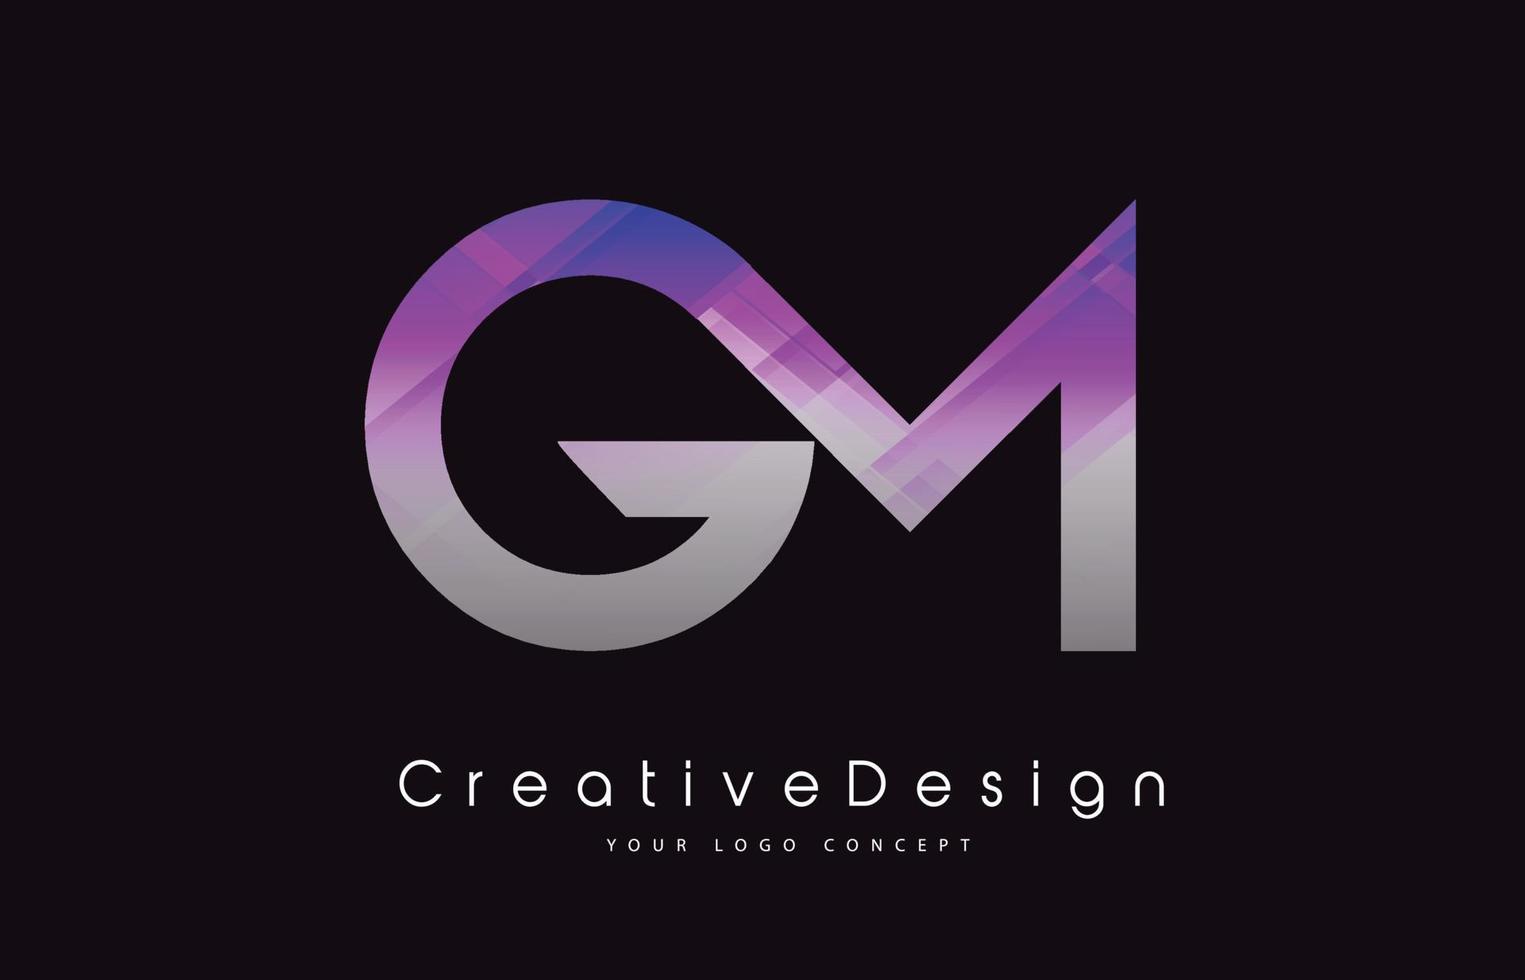 disegno del logo della lettera gm. trama viola icona creativa lettere moderne logo vettoriale. vettore